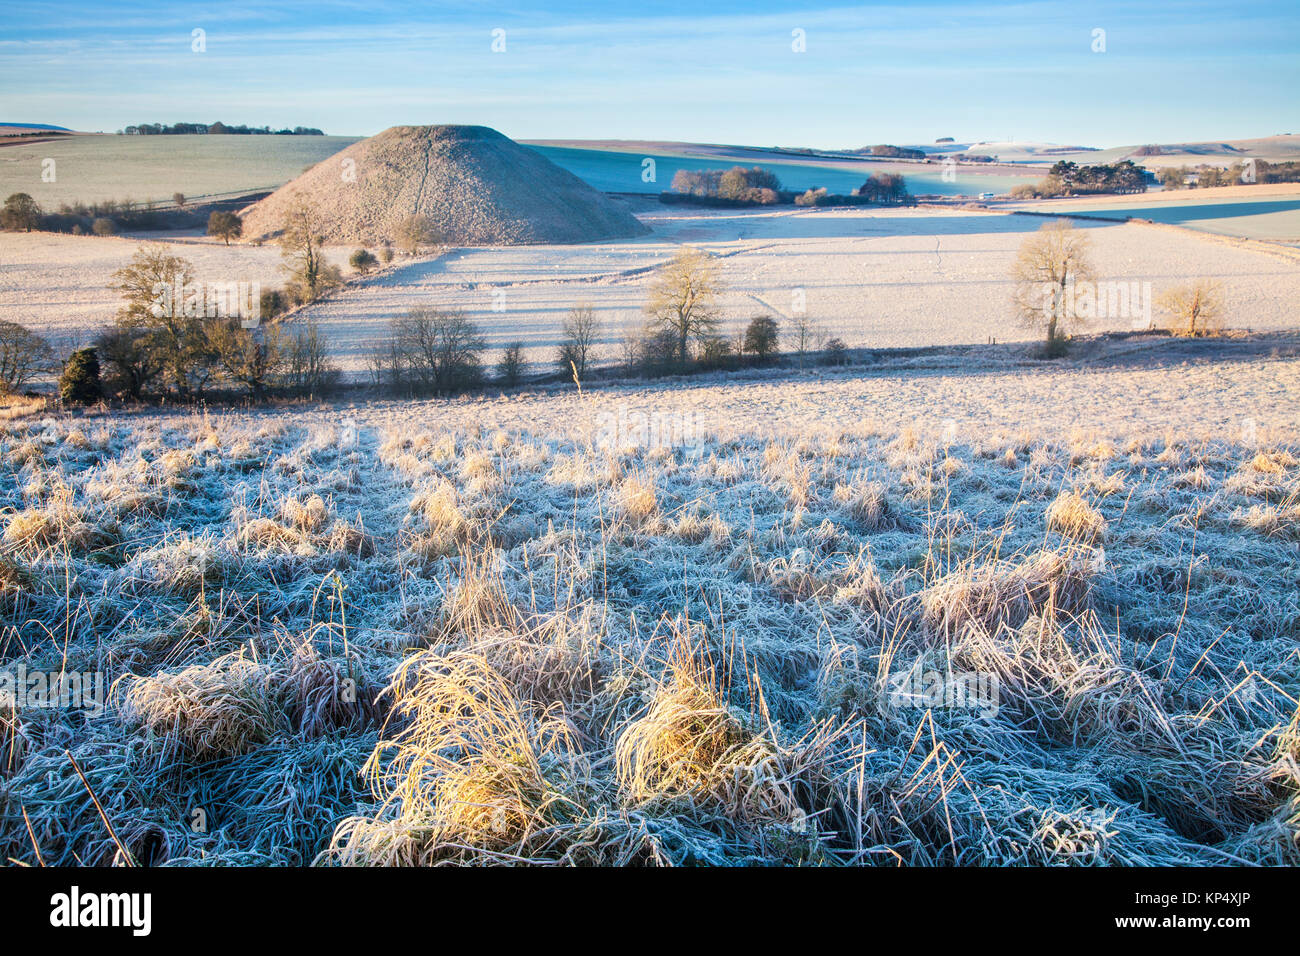 Un matin glacial à Silbury Hill dans le Wiltshire. Banque D'Images